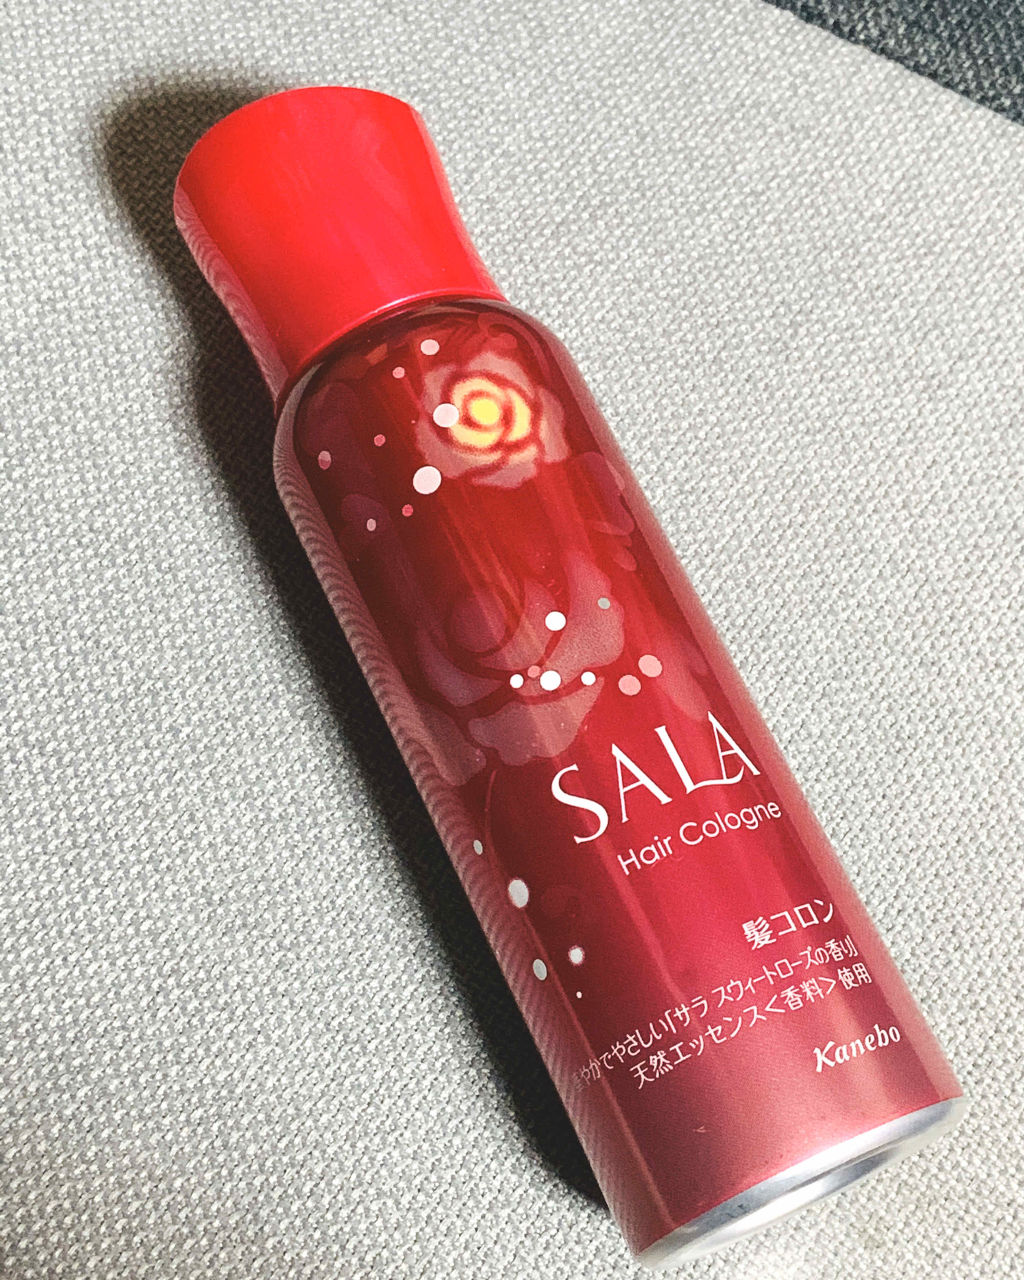 247円 新発売の サラ 髪コロン サラスウィートローズの香り 80g